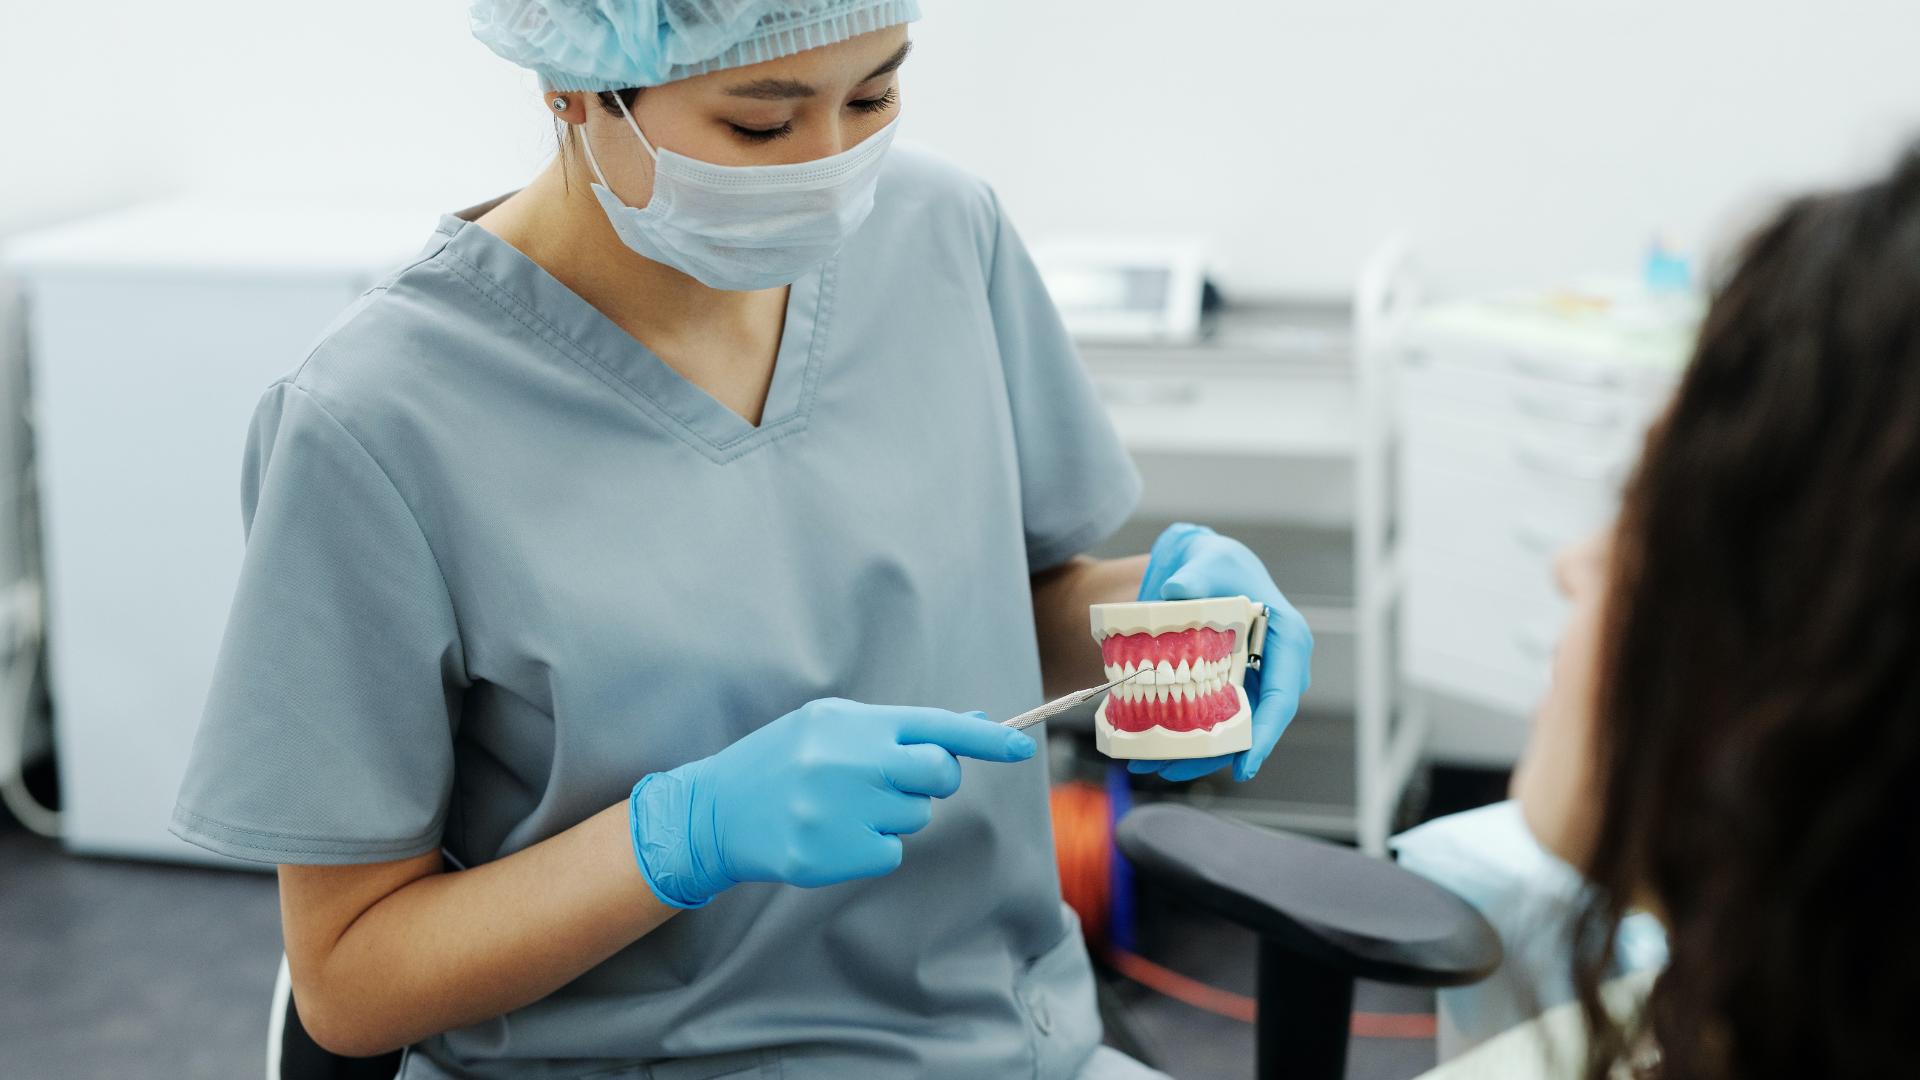 Foto de capa do artigo "Restauração dental: quando é indicada, benefícios e cuidados"